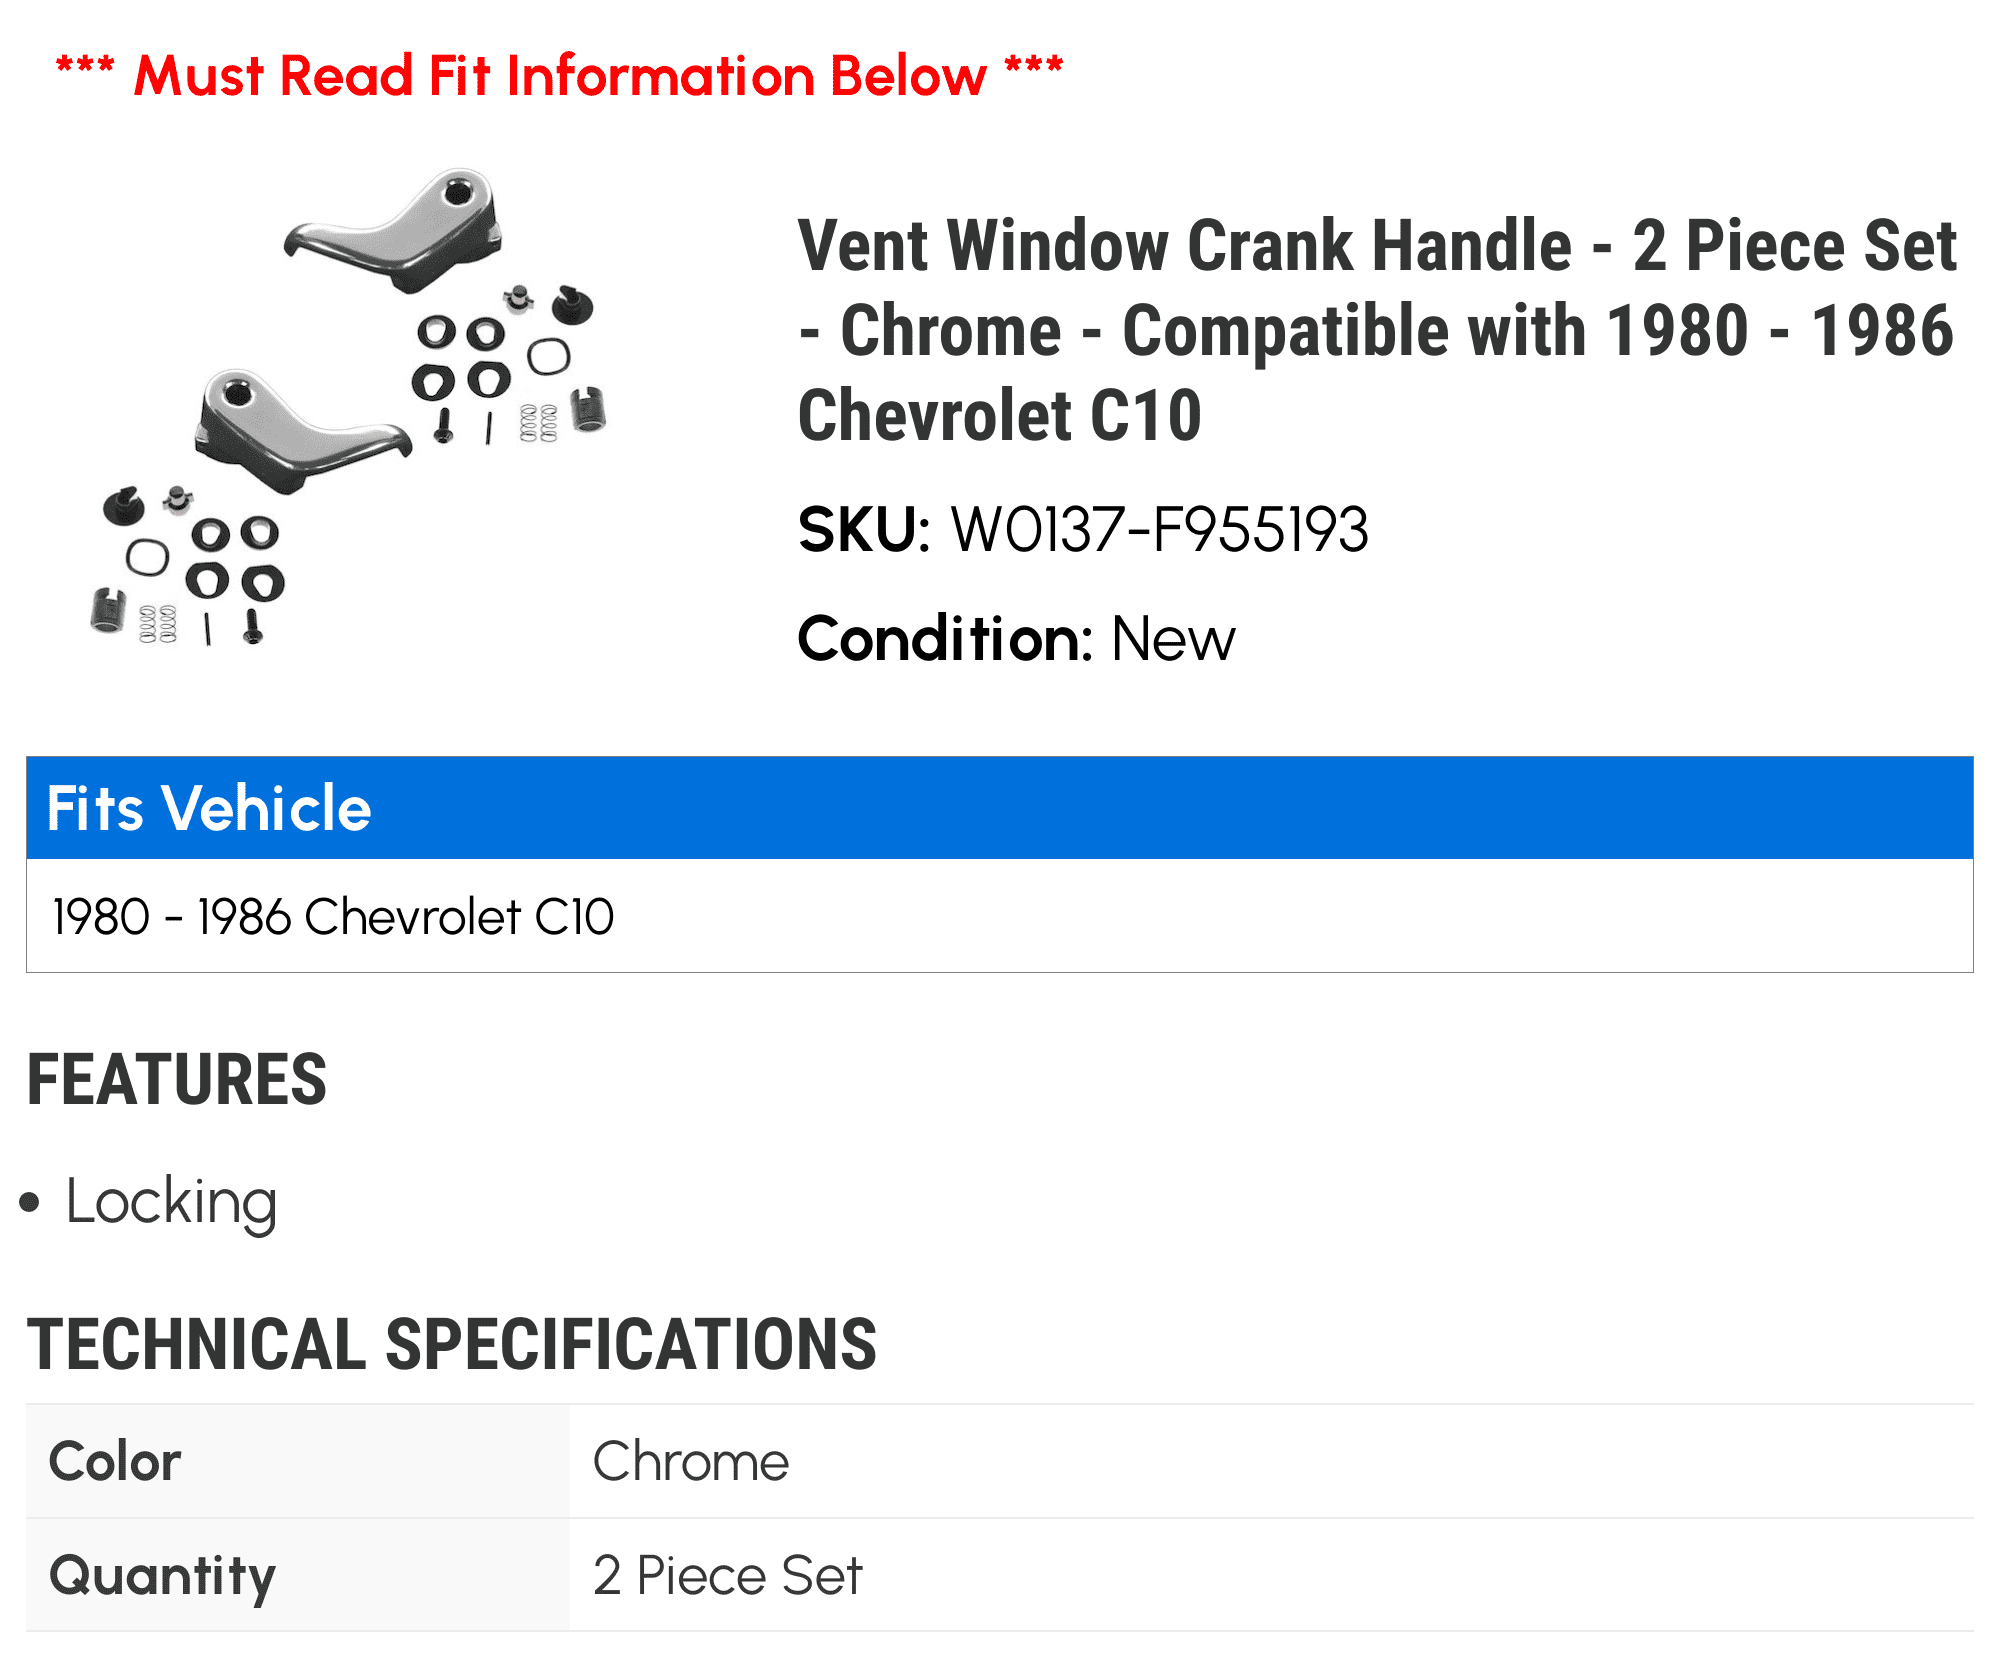 Chrome 2 Piece Set Compatible with 1980-1986 Chevy C10 Vent Window Crank Handle 